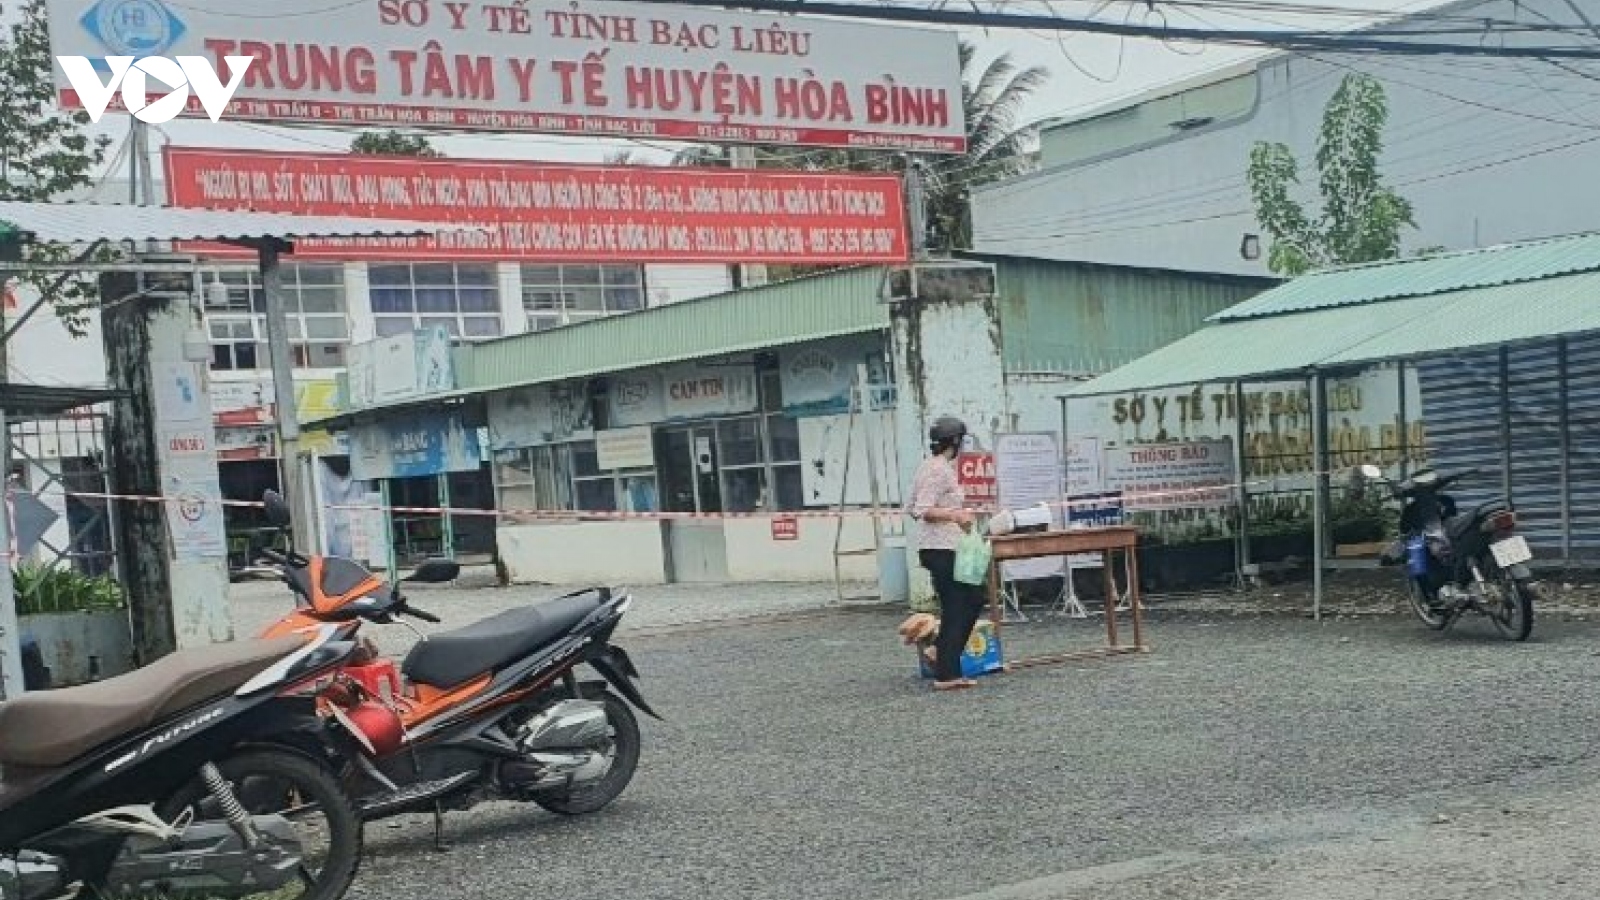 Bạc Liêu phong tỏa, thiết lập vùng cách ly y tế tại Trung tâm Y tế huyện Hòa Bình